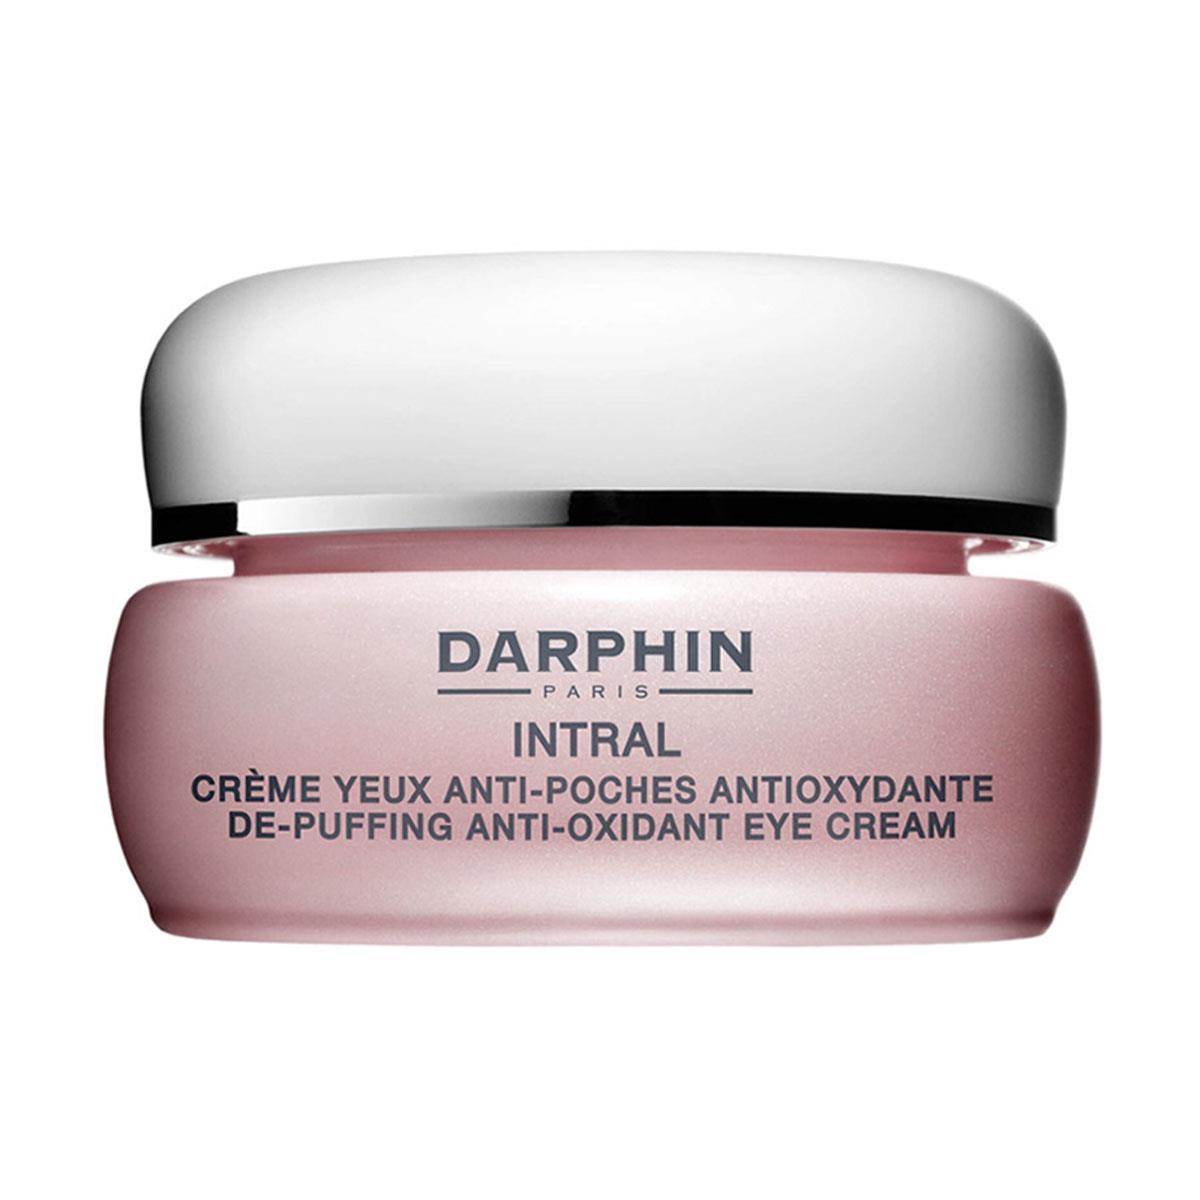 Darphin Intral De-Puffing Anti-Oxidant Eye Cream Göz Bakım Kremi 15 ml -  Daffne